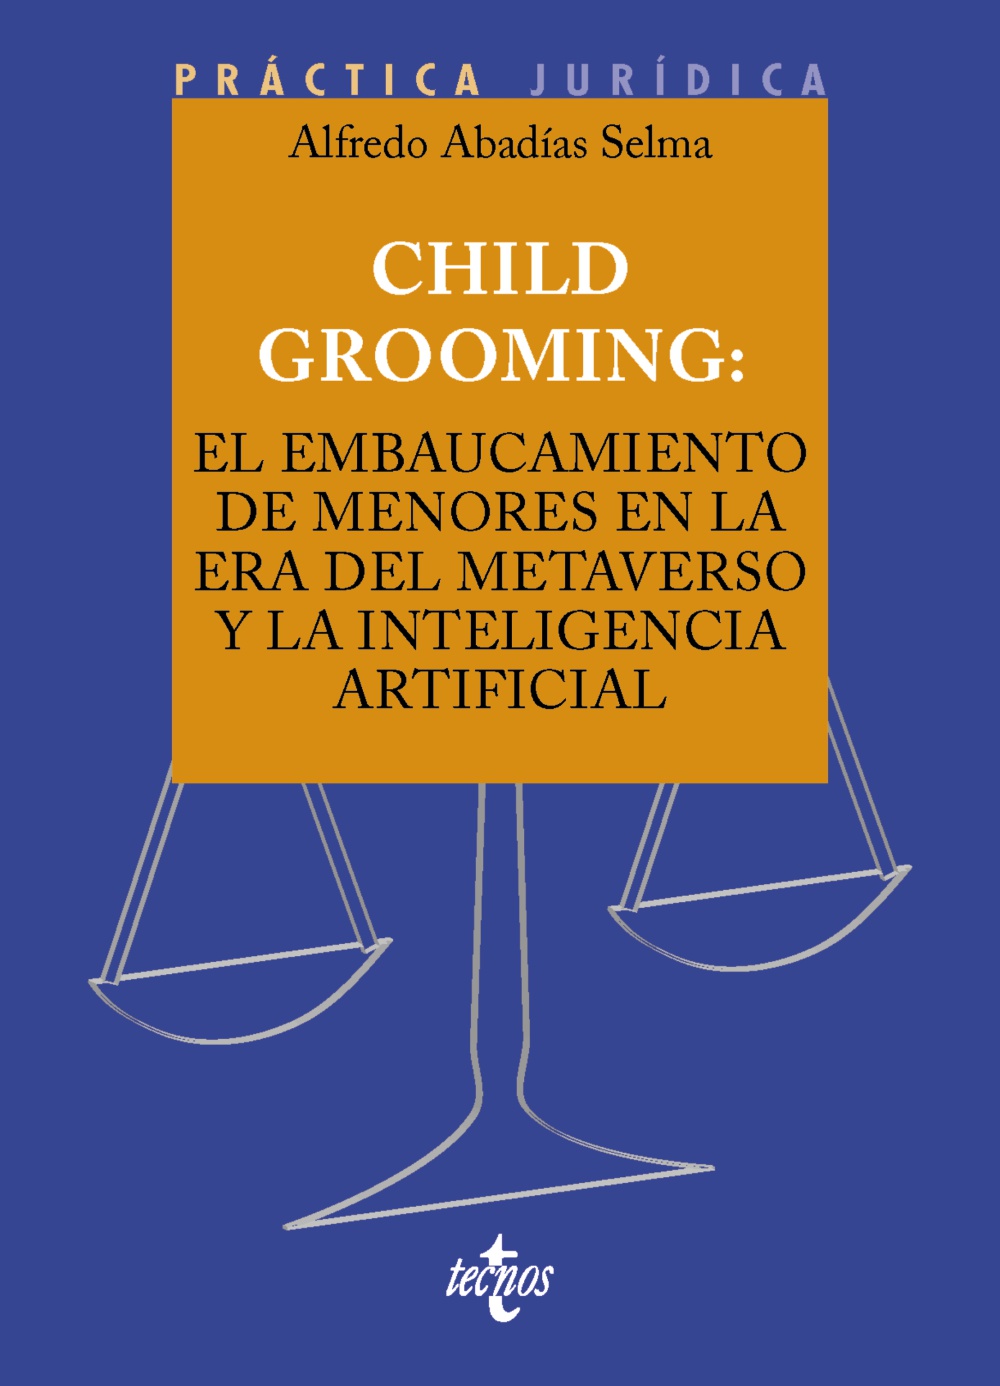 Child Grooming el embaucamiento / 9788430990313